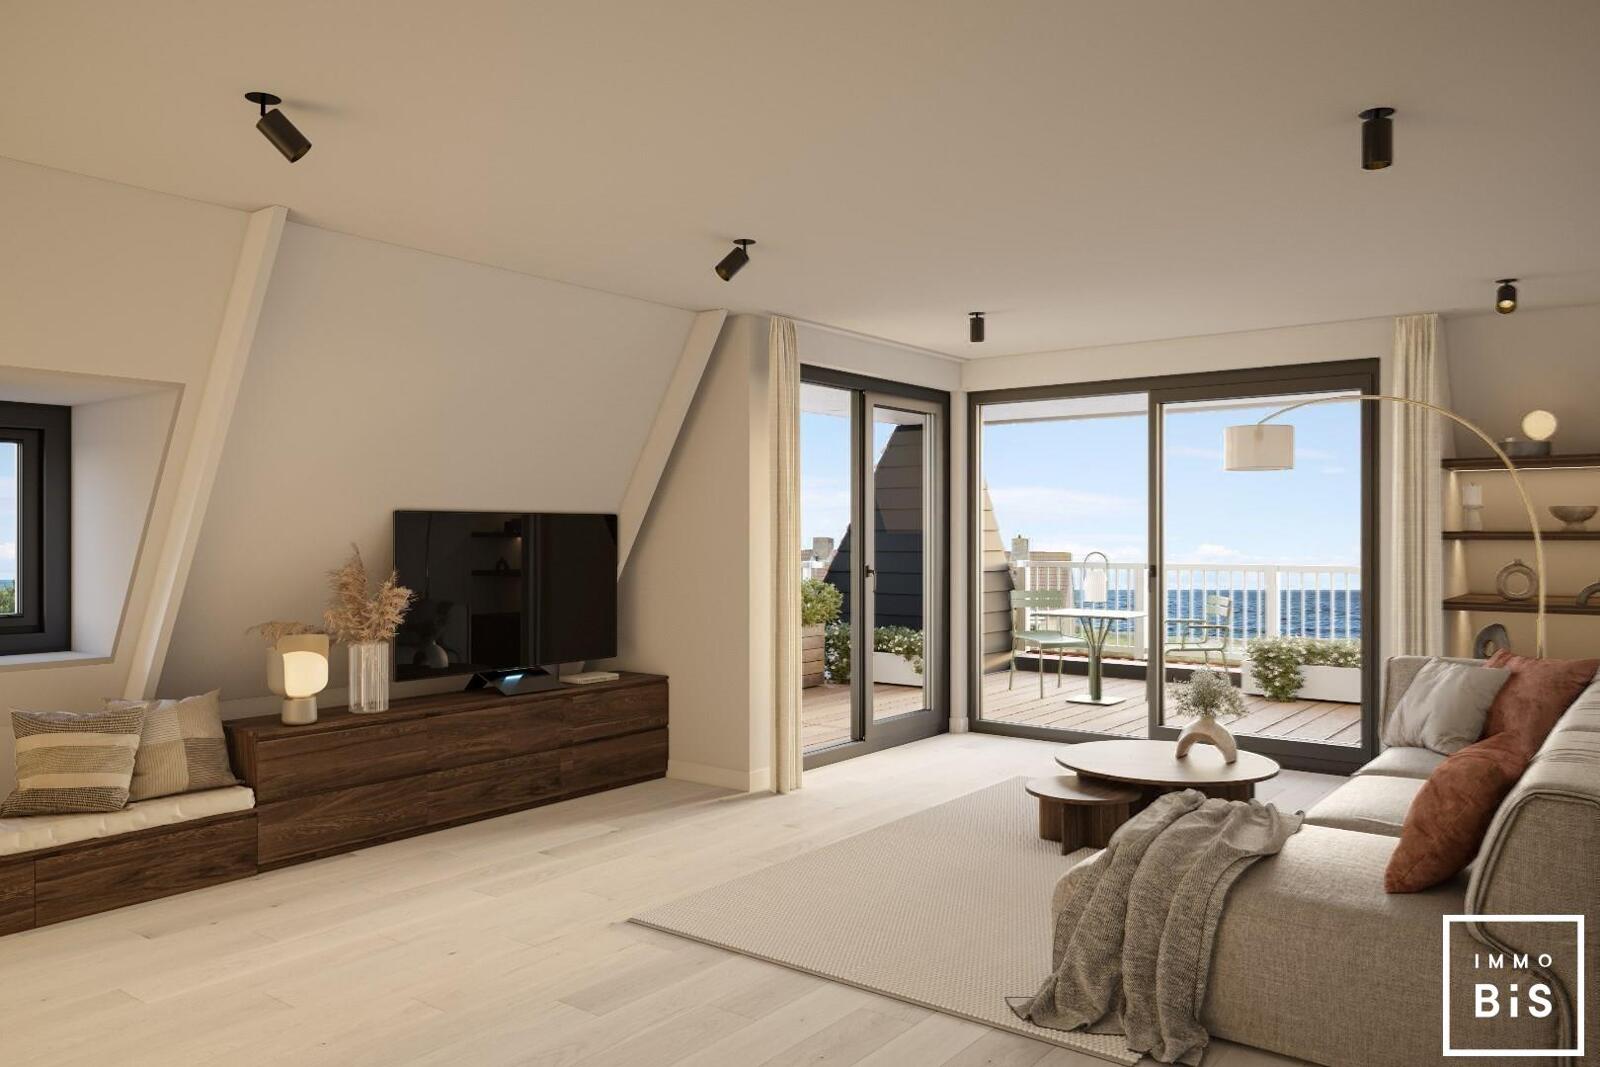 " Appartement villa moderne avec terrasse sur la Digue à Cadzand - Résidence Duinhof-Noord " 5